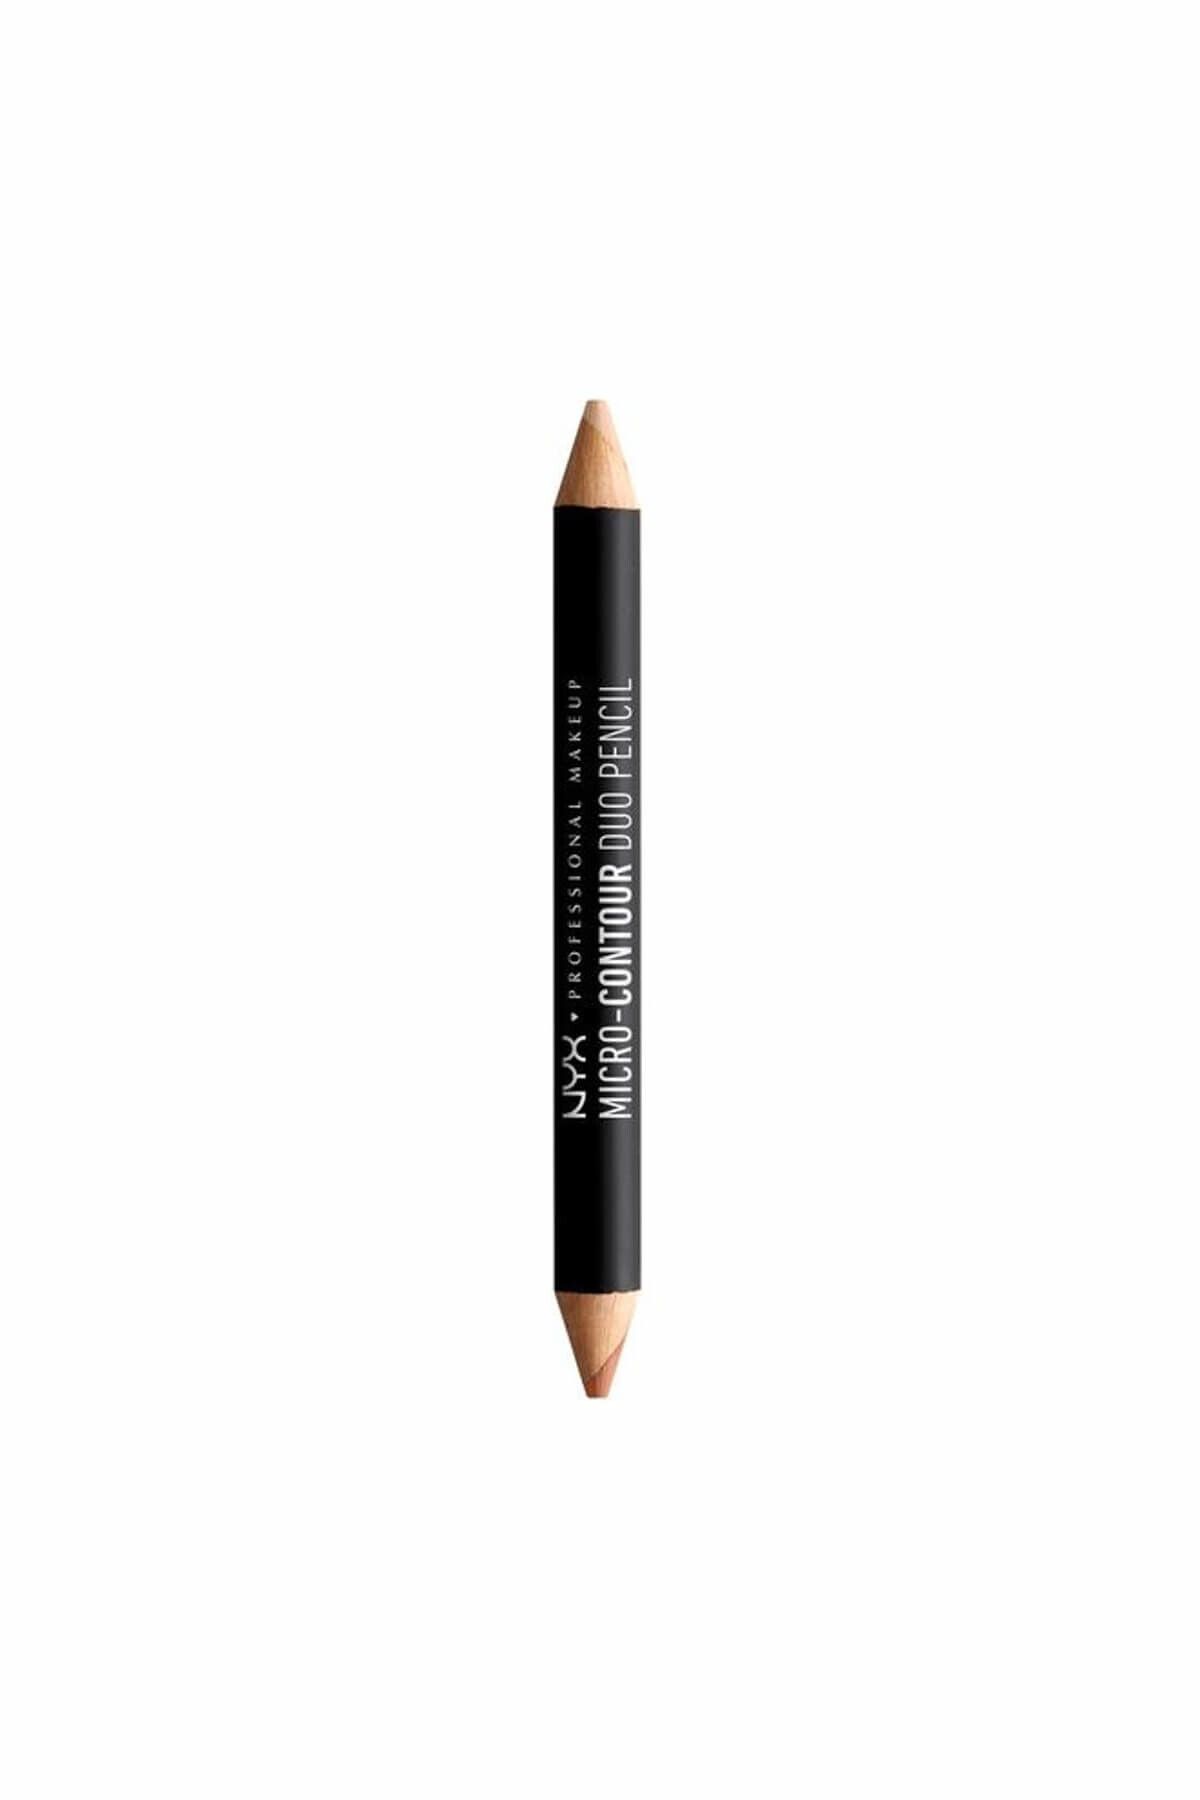 NYX Professional Makeup Kontür Kalemi - Micro-Contour Duo Pencil Light 800897144111